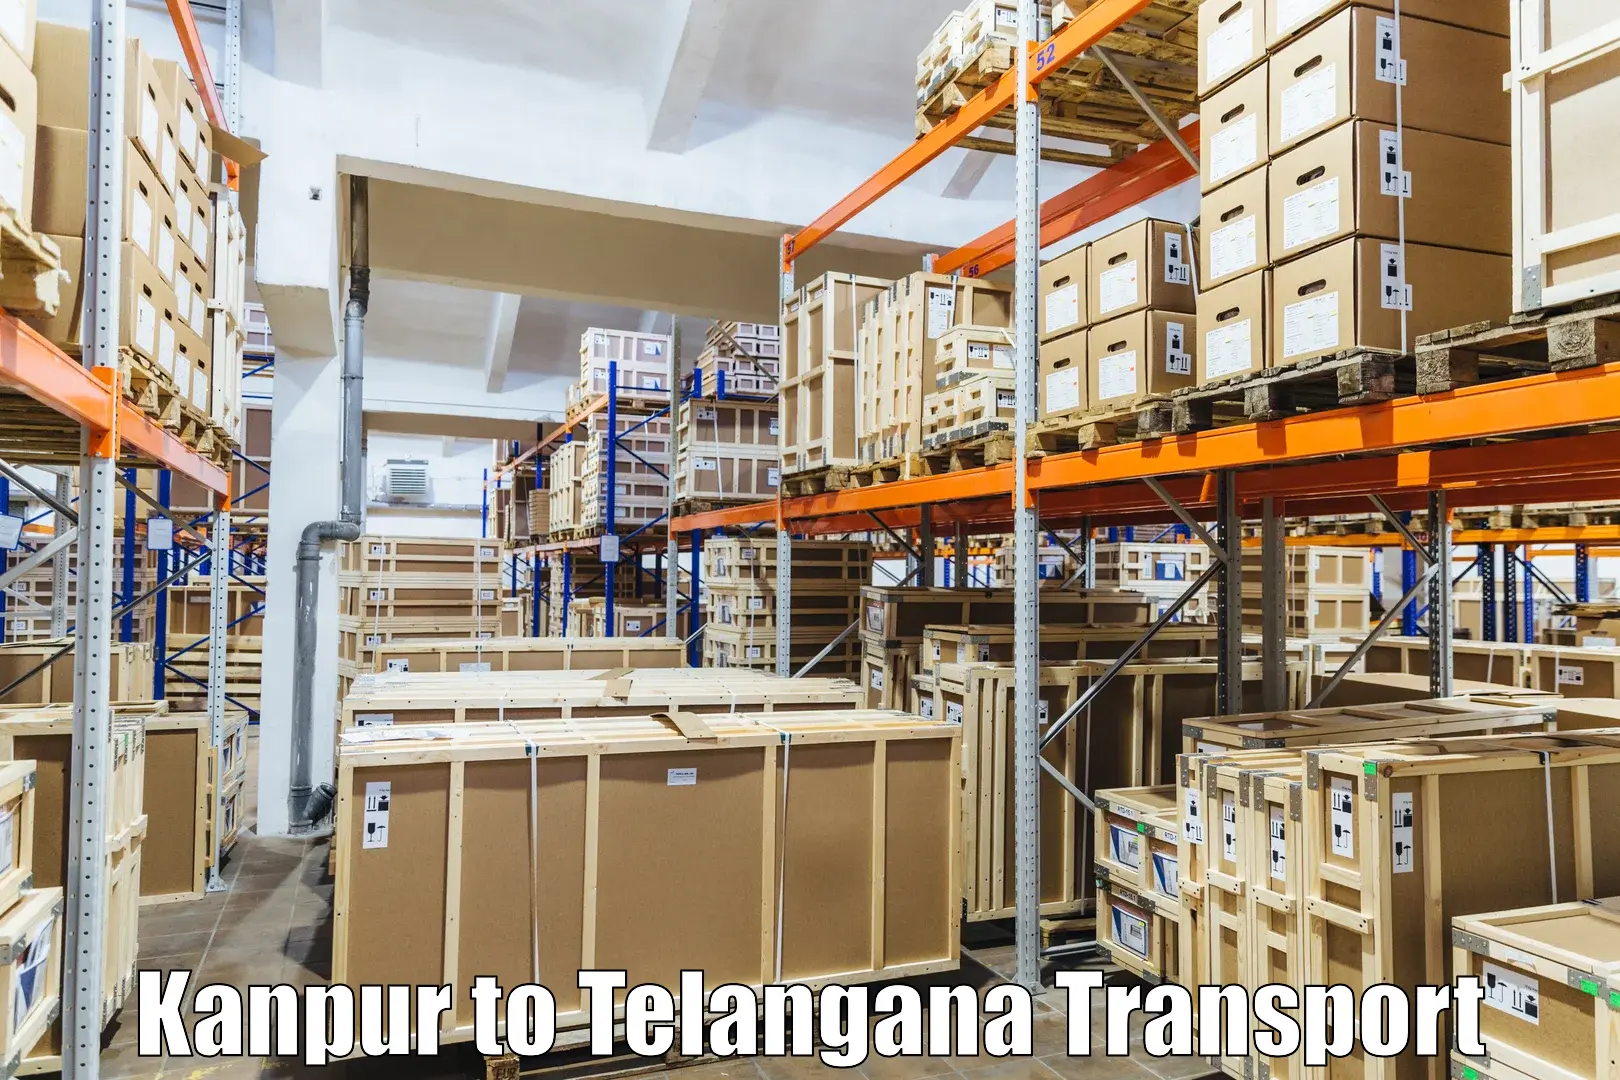 International cargo transportation services Kanpur to Warangal